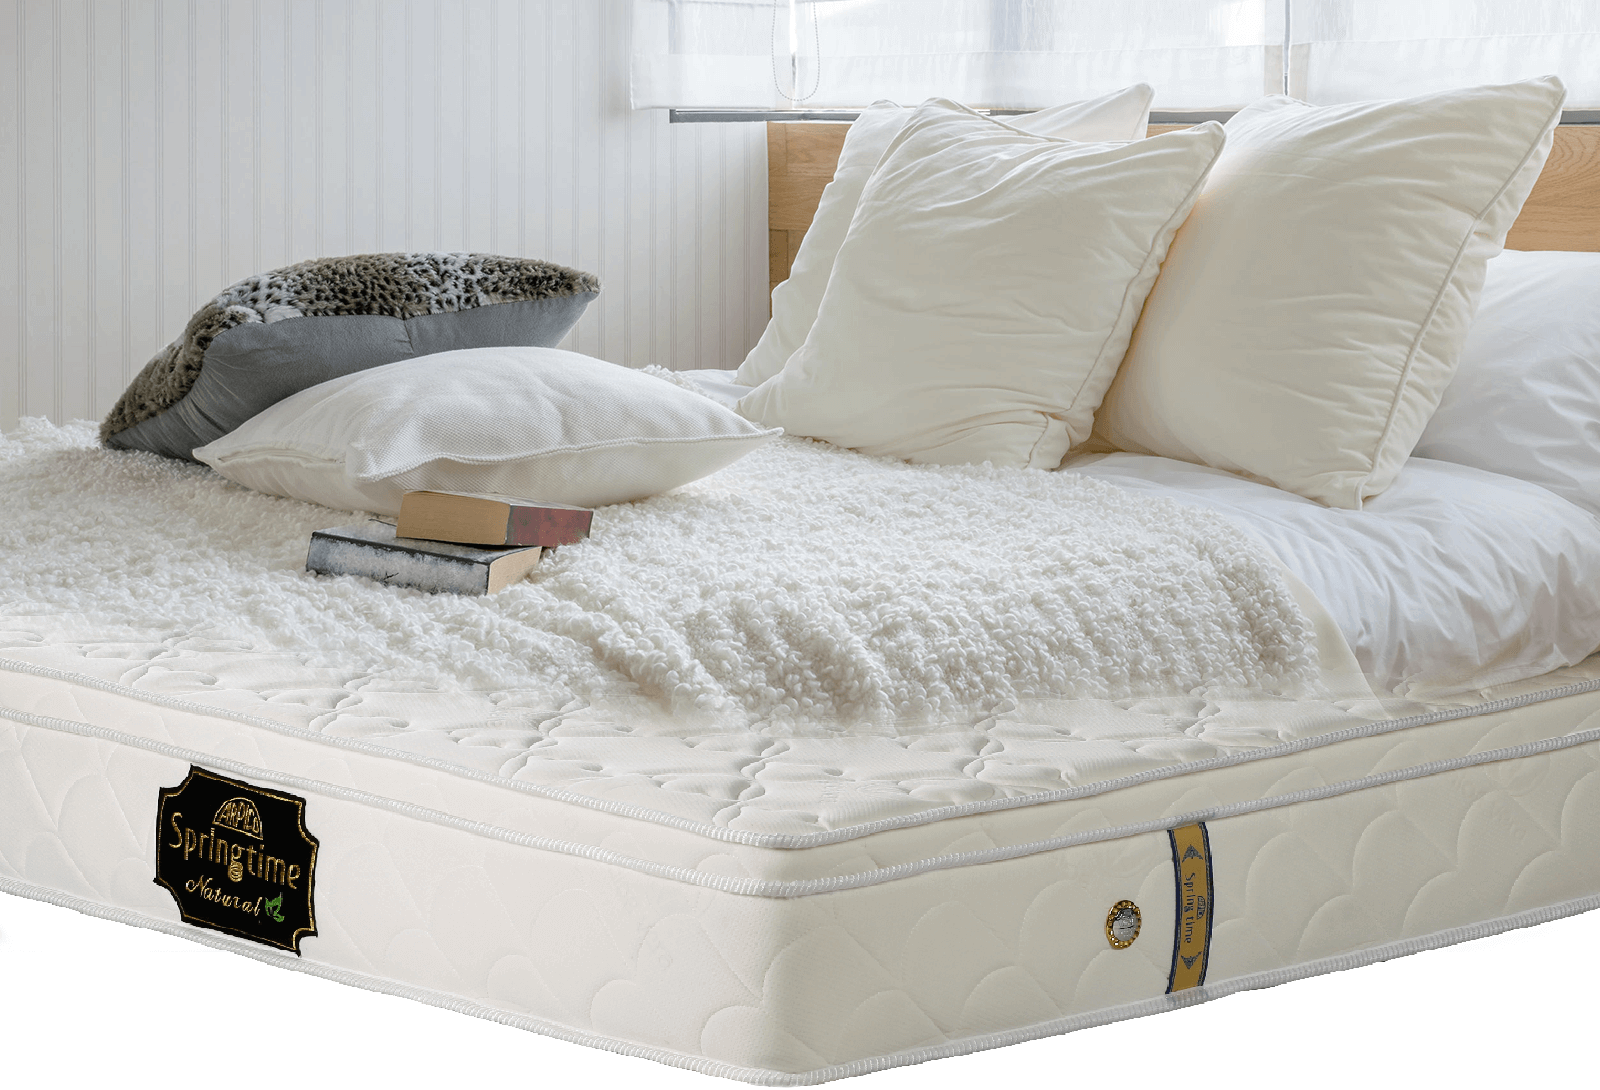 arpico pride mattress price